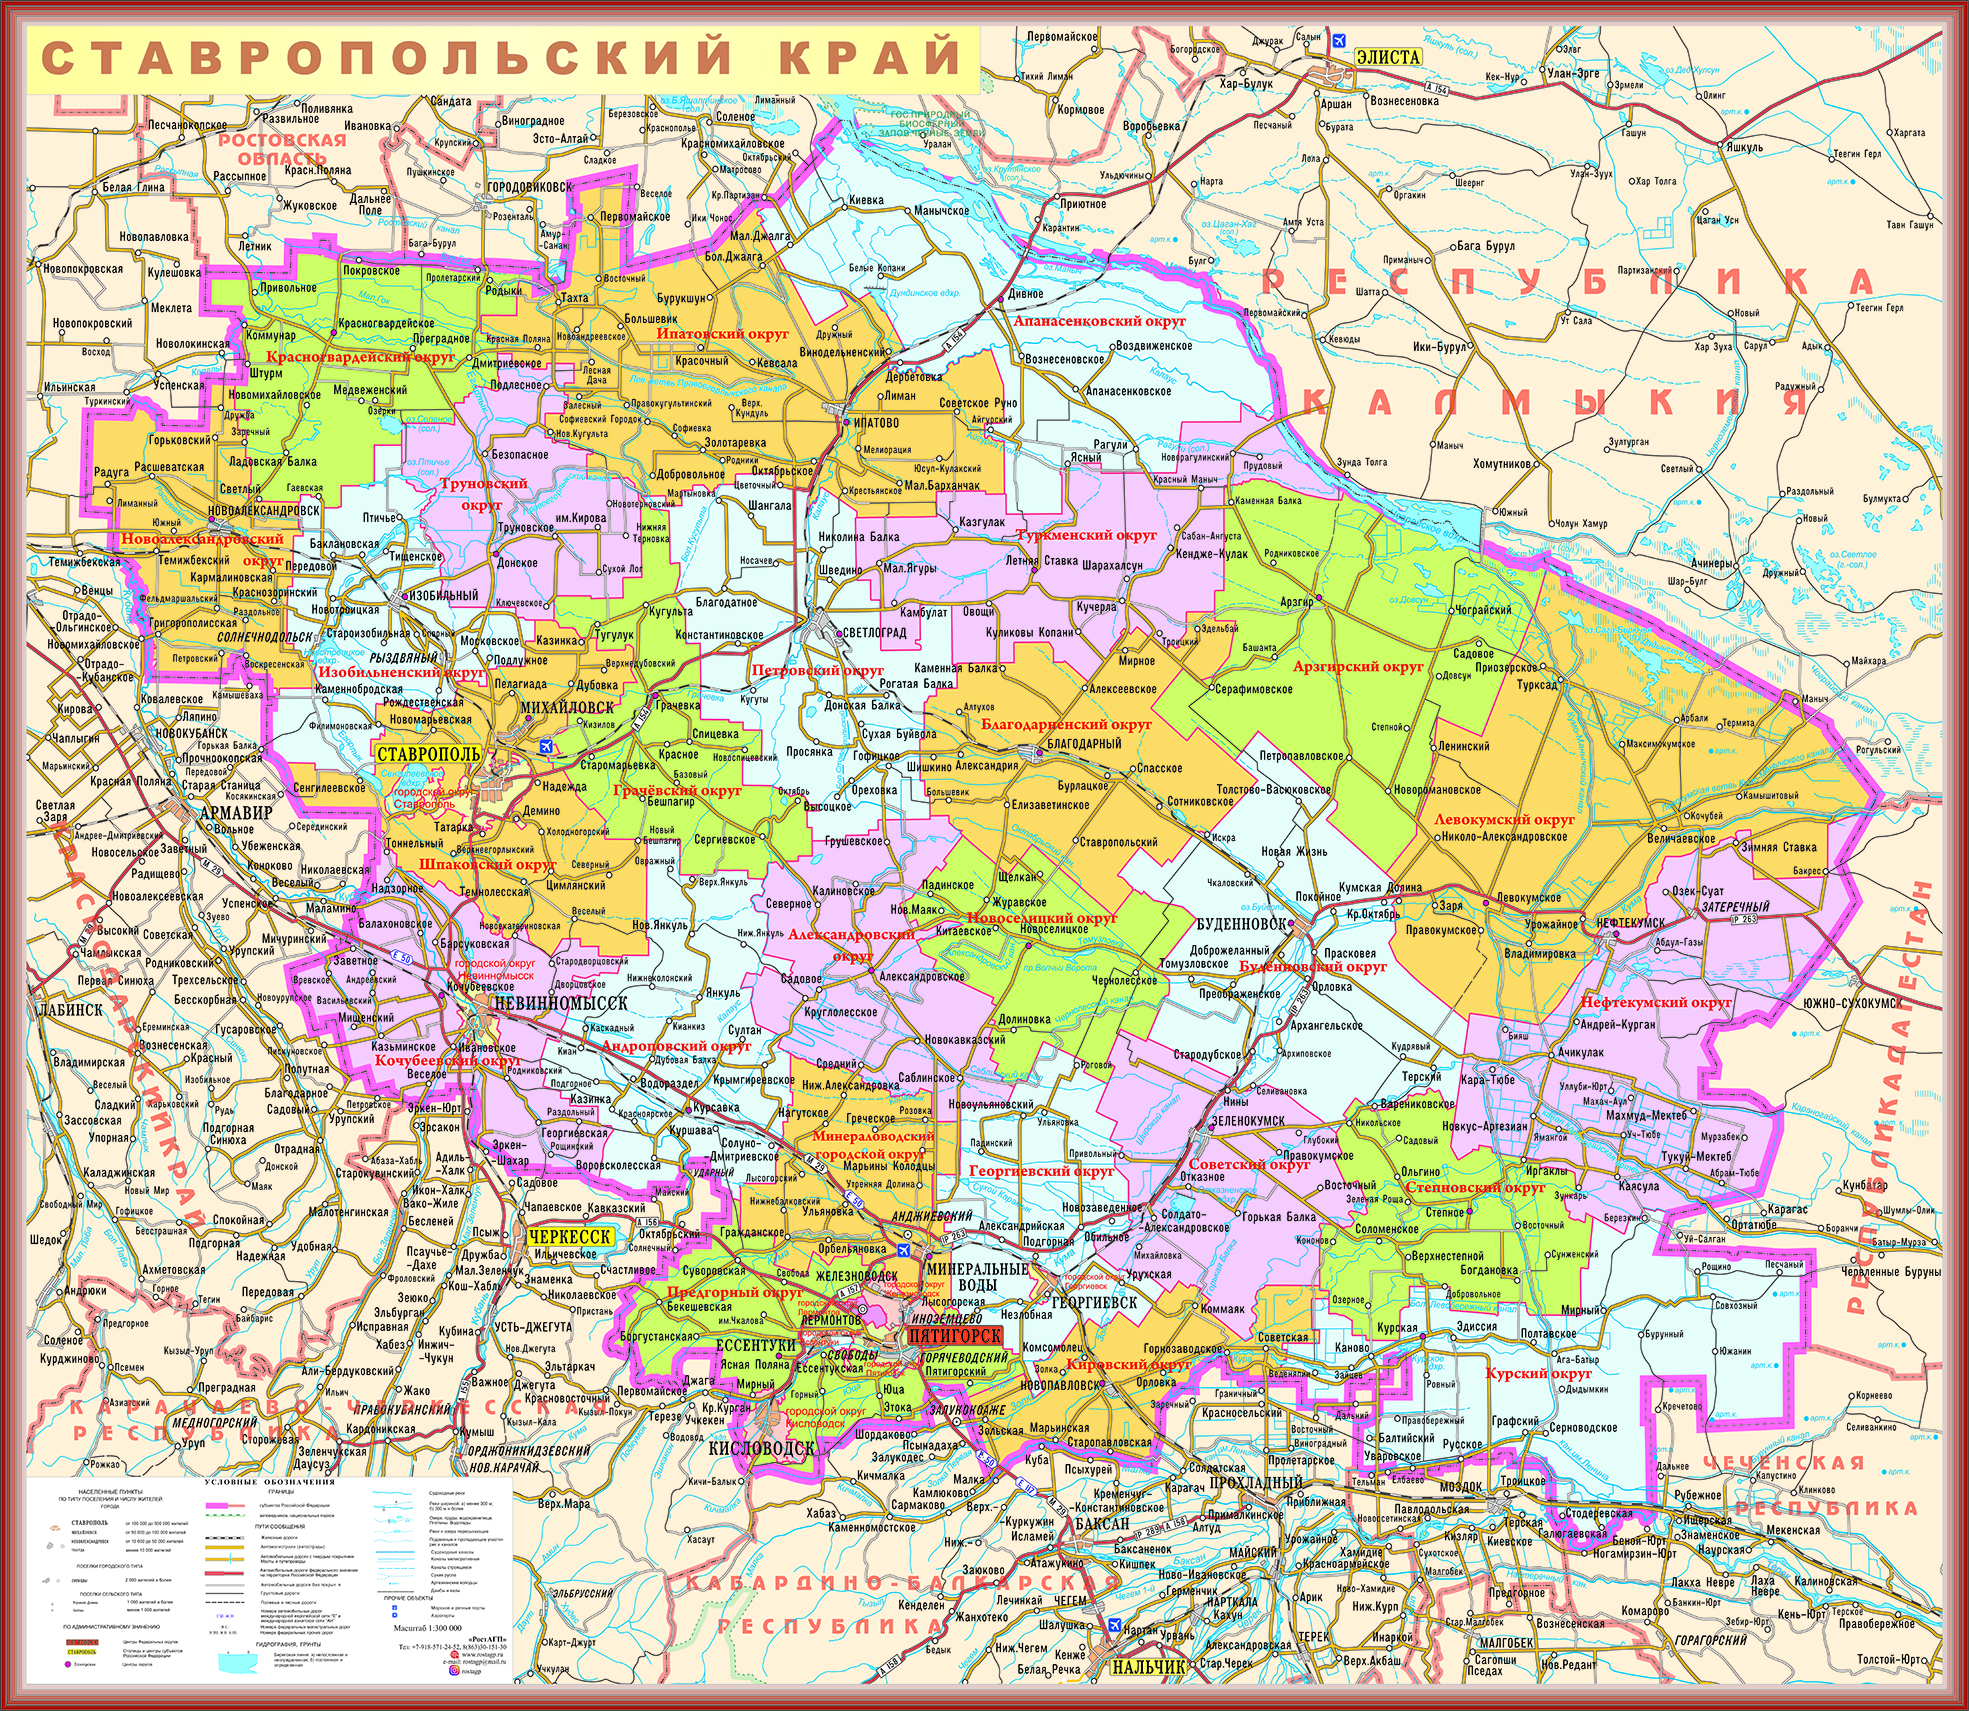 фото карты ставропольского края